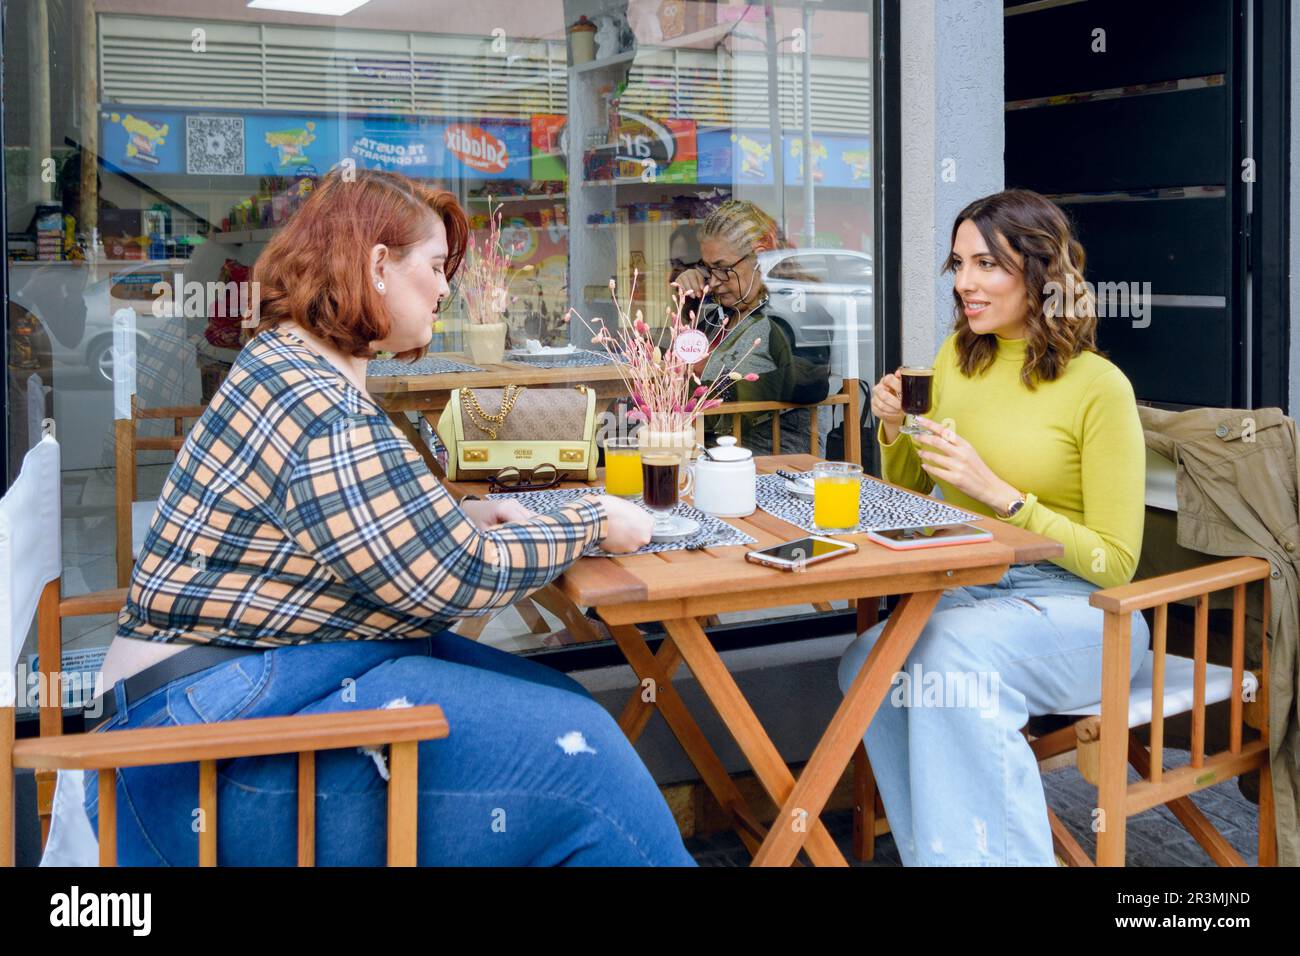 deux jeunes femmes latino-argentines, amis sont assis à l'extérieur de la cafétéria, parlant de boire du café en attente de nourriture pour le petit déjeuner, concep de style de vie Banque D'Images